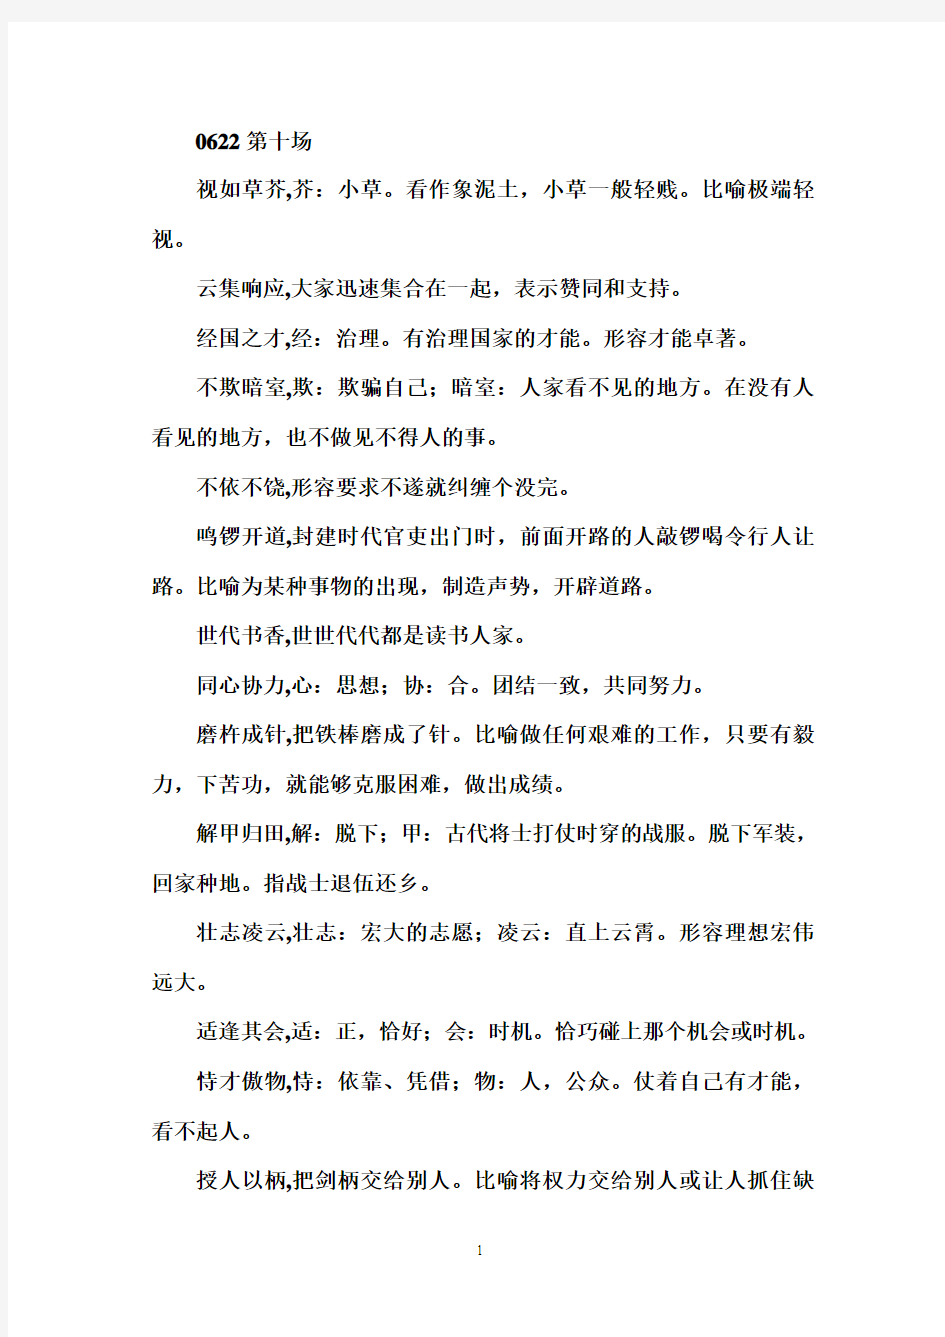 中国成语大会第十场成语详解汇编